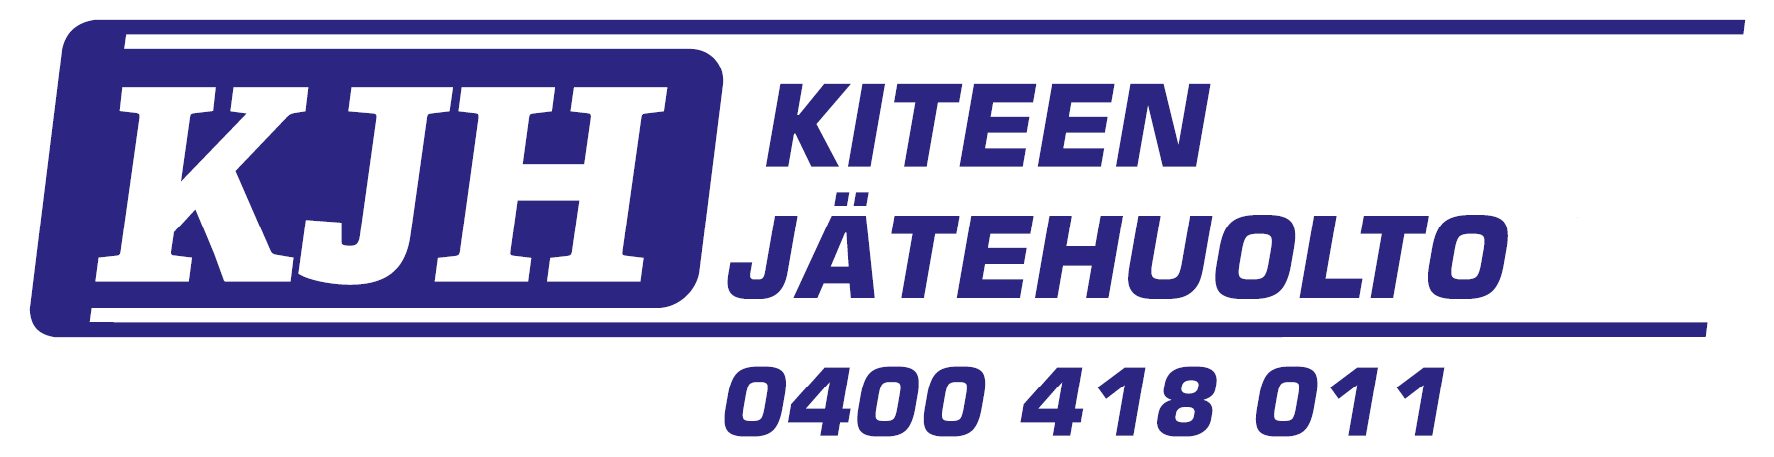 Kiteen Jätehuolto Oy - logo